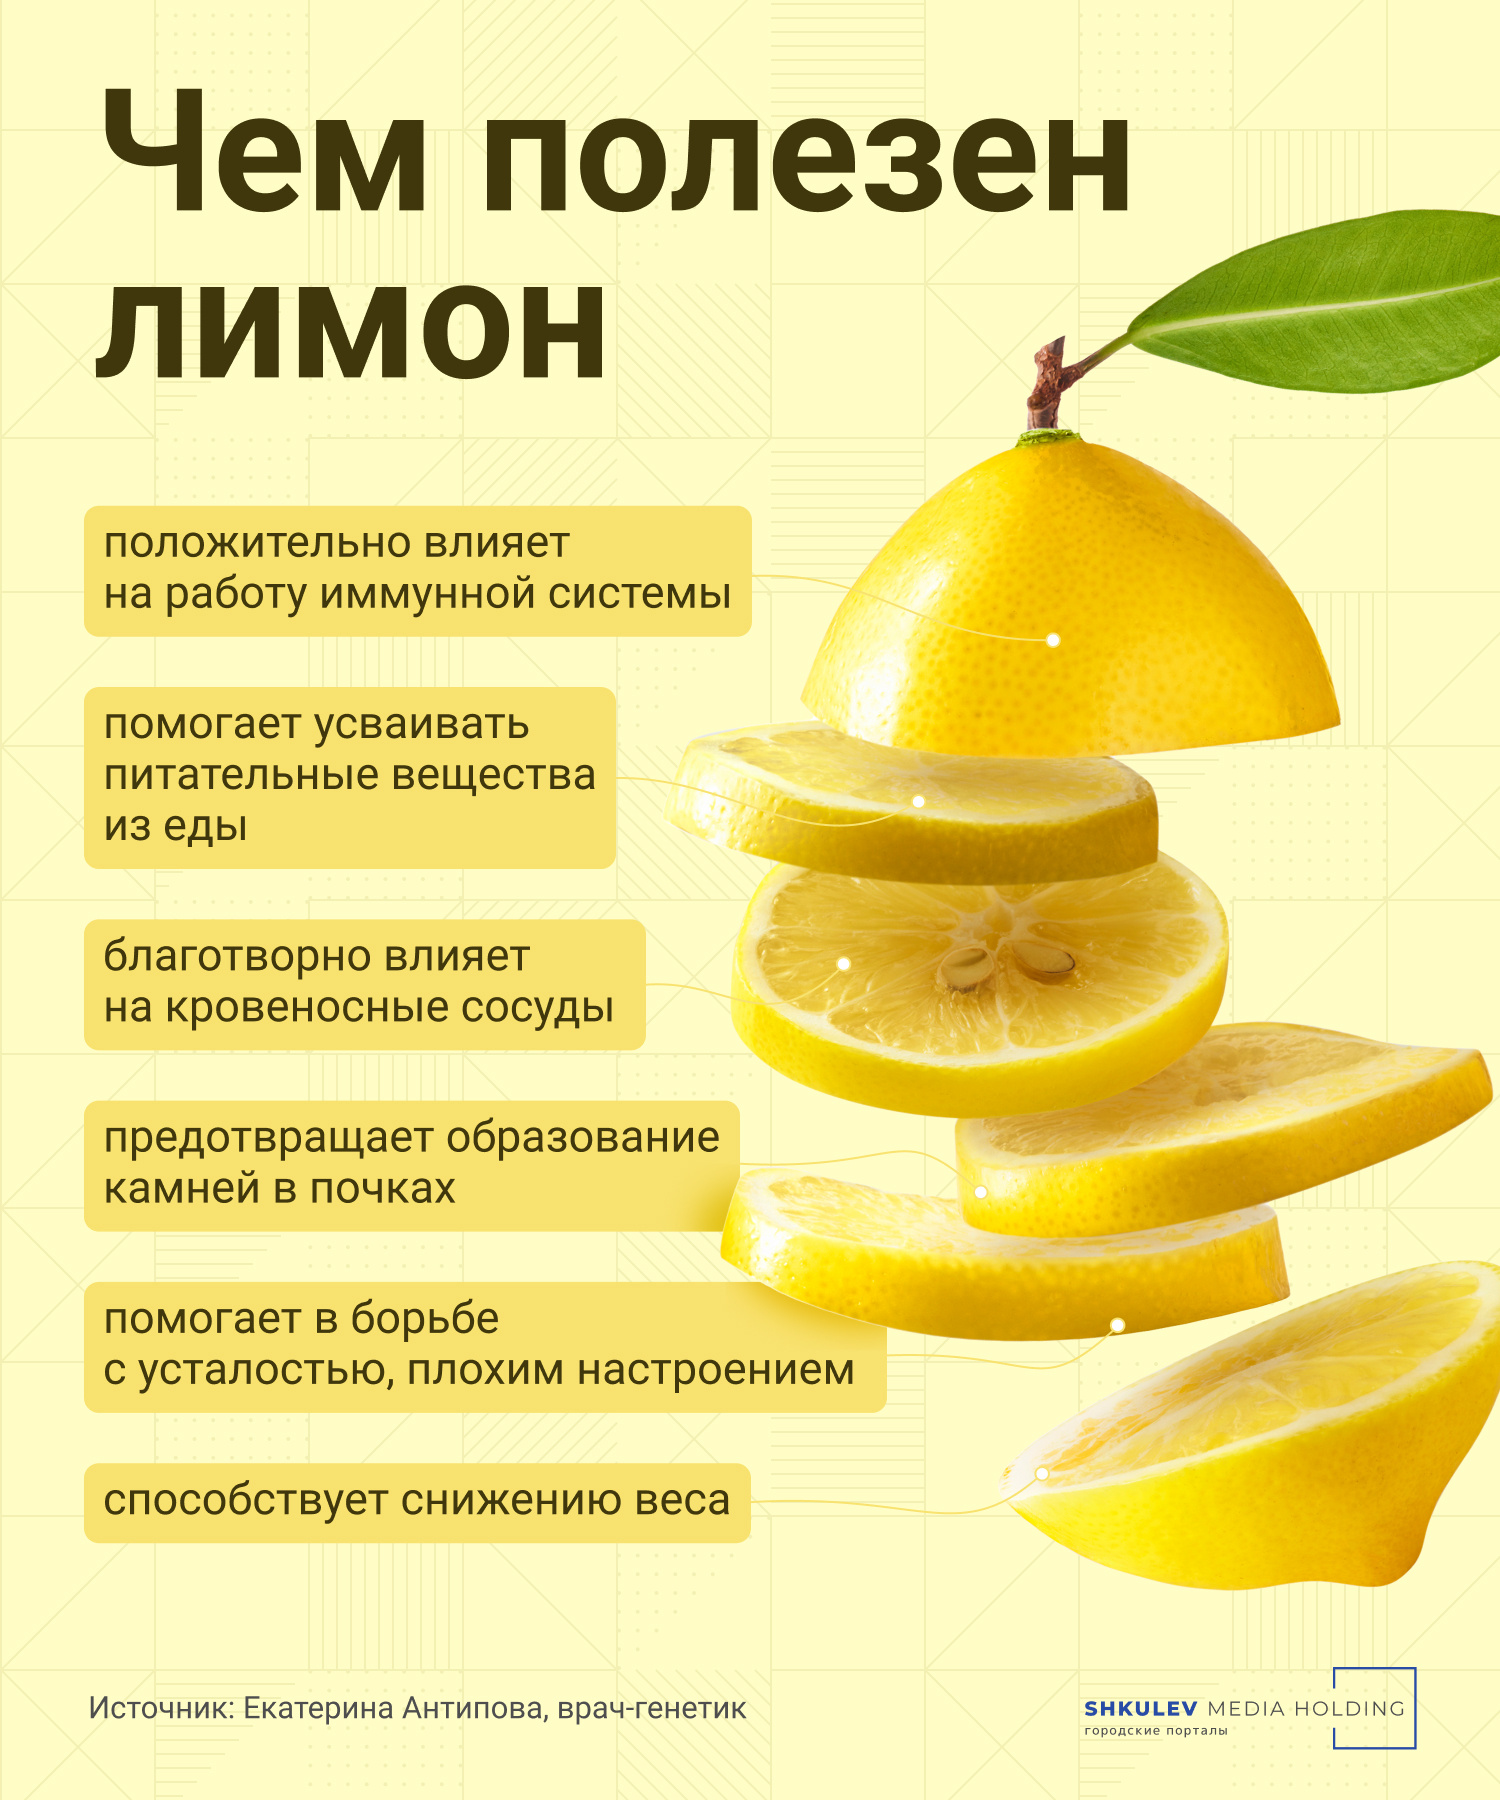 О пользе лимона мы хорошо наслышаны, но повторение — мать здоровья